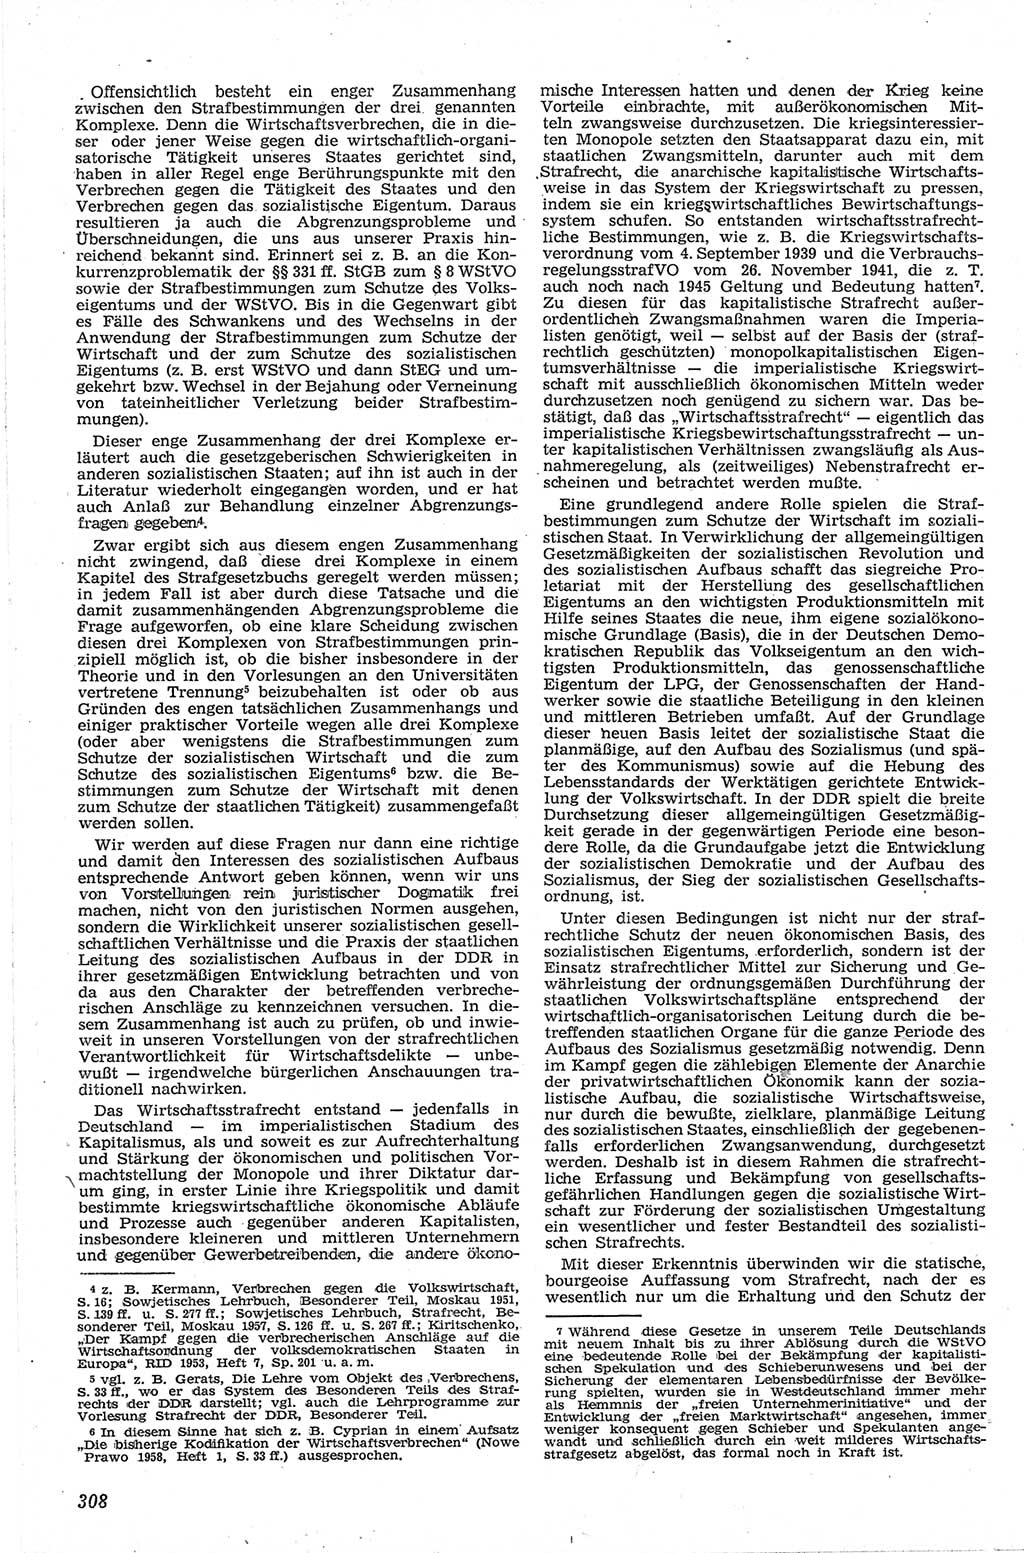 Neue Justiz (NJ), Zeitschrift für Recht und Rechtswissenschaft [Deutsche Demokratische Republik (DDR)], 13. Jahrgang 1959, Seite 308 (NJ DDR 1959, S. 308)